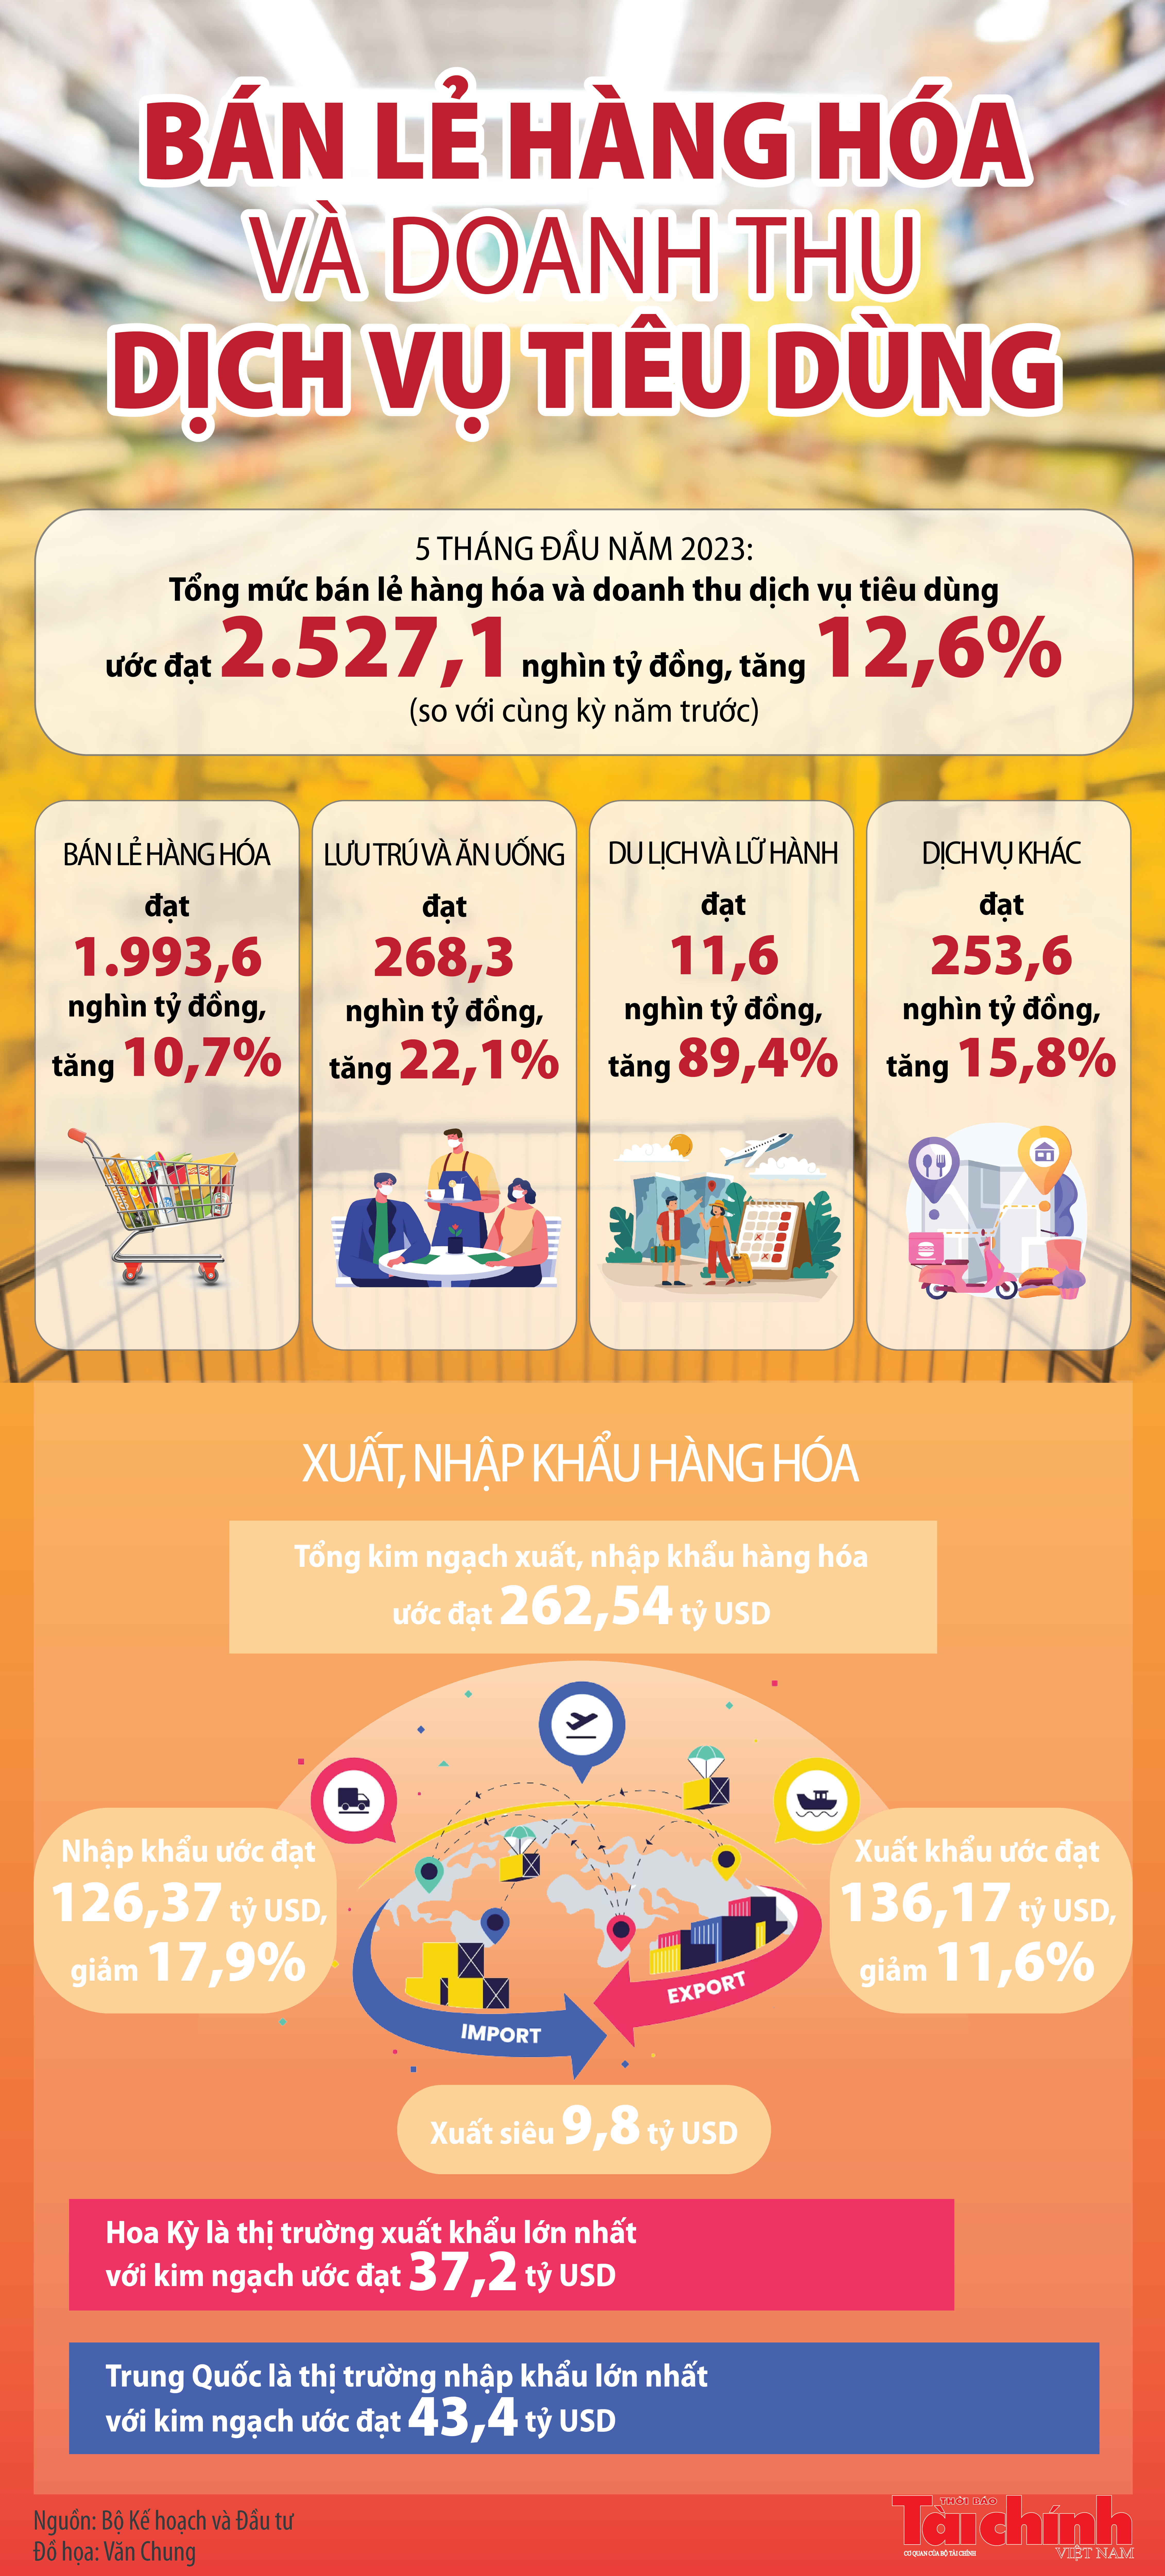 Infographics: Tổng mức bán lẻ hàng hóa, doanh thu dịch vụ tiêu dùng